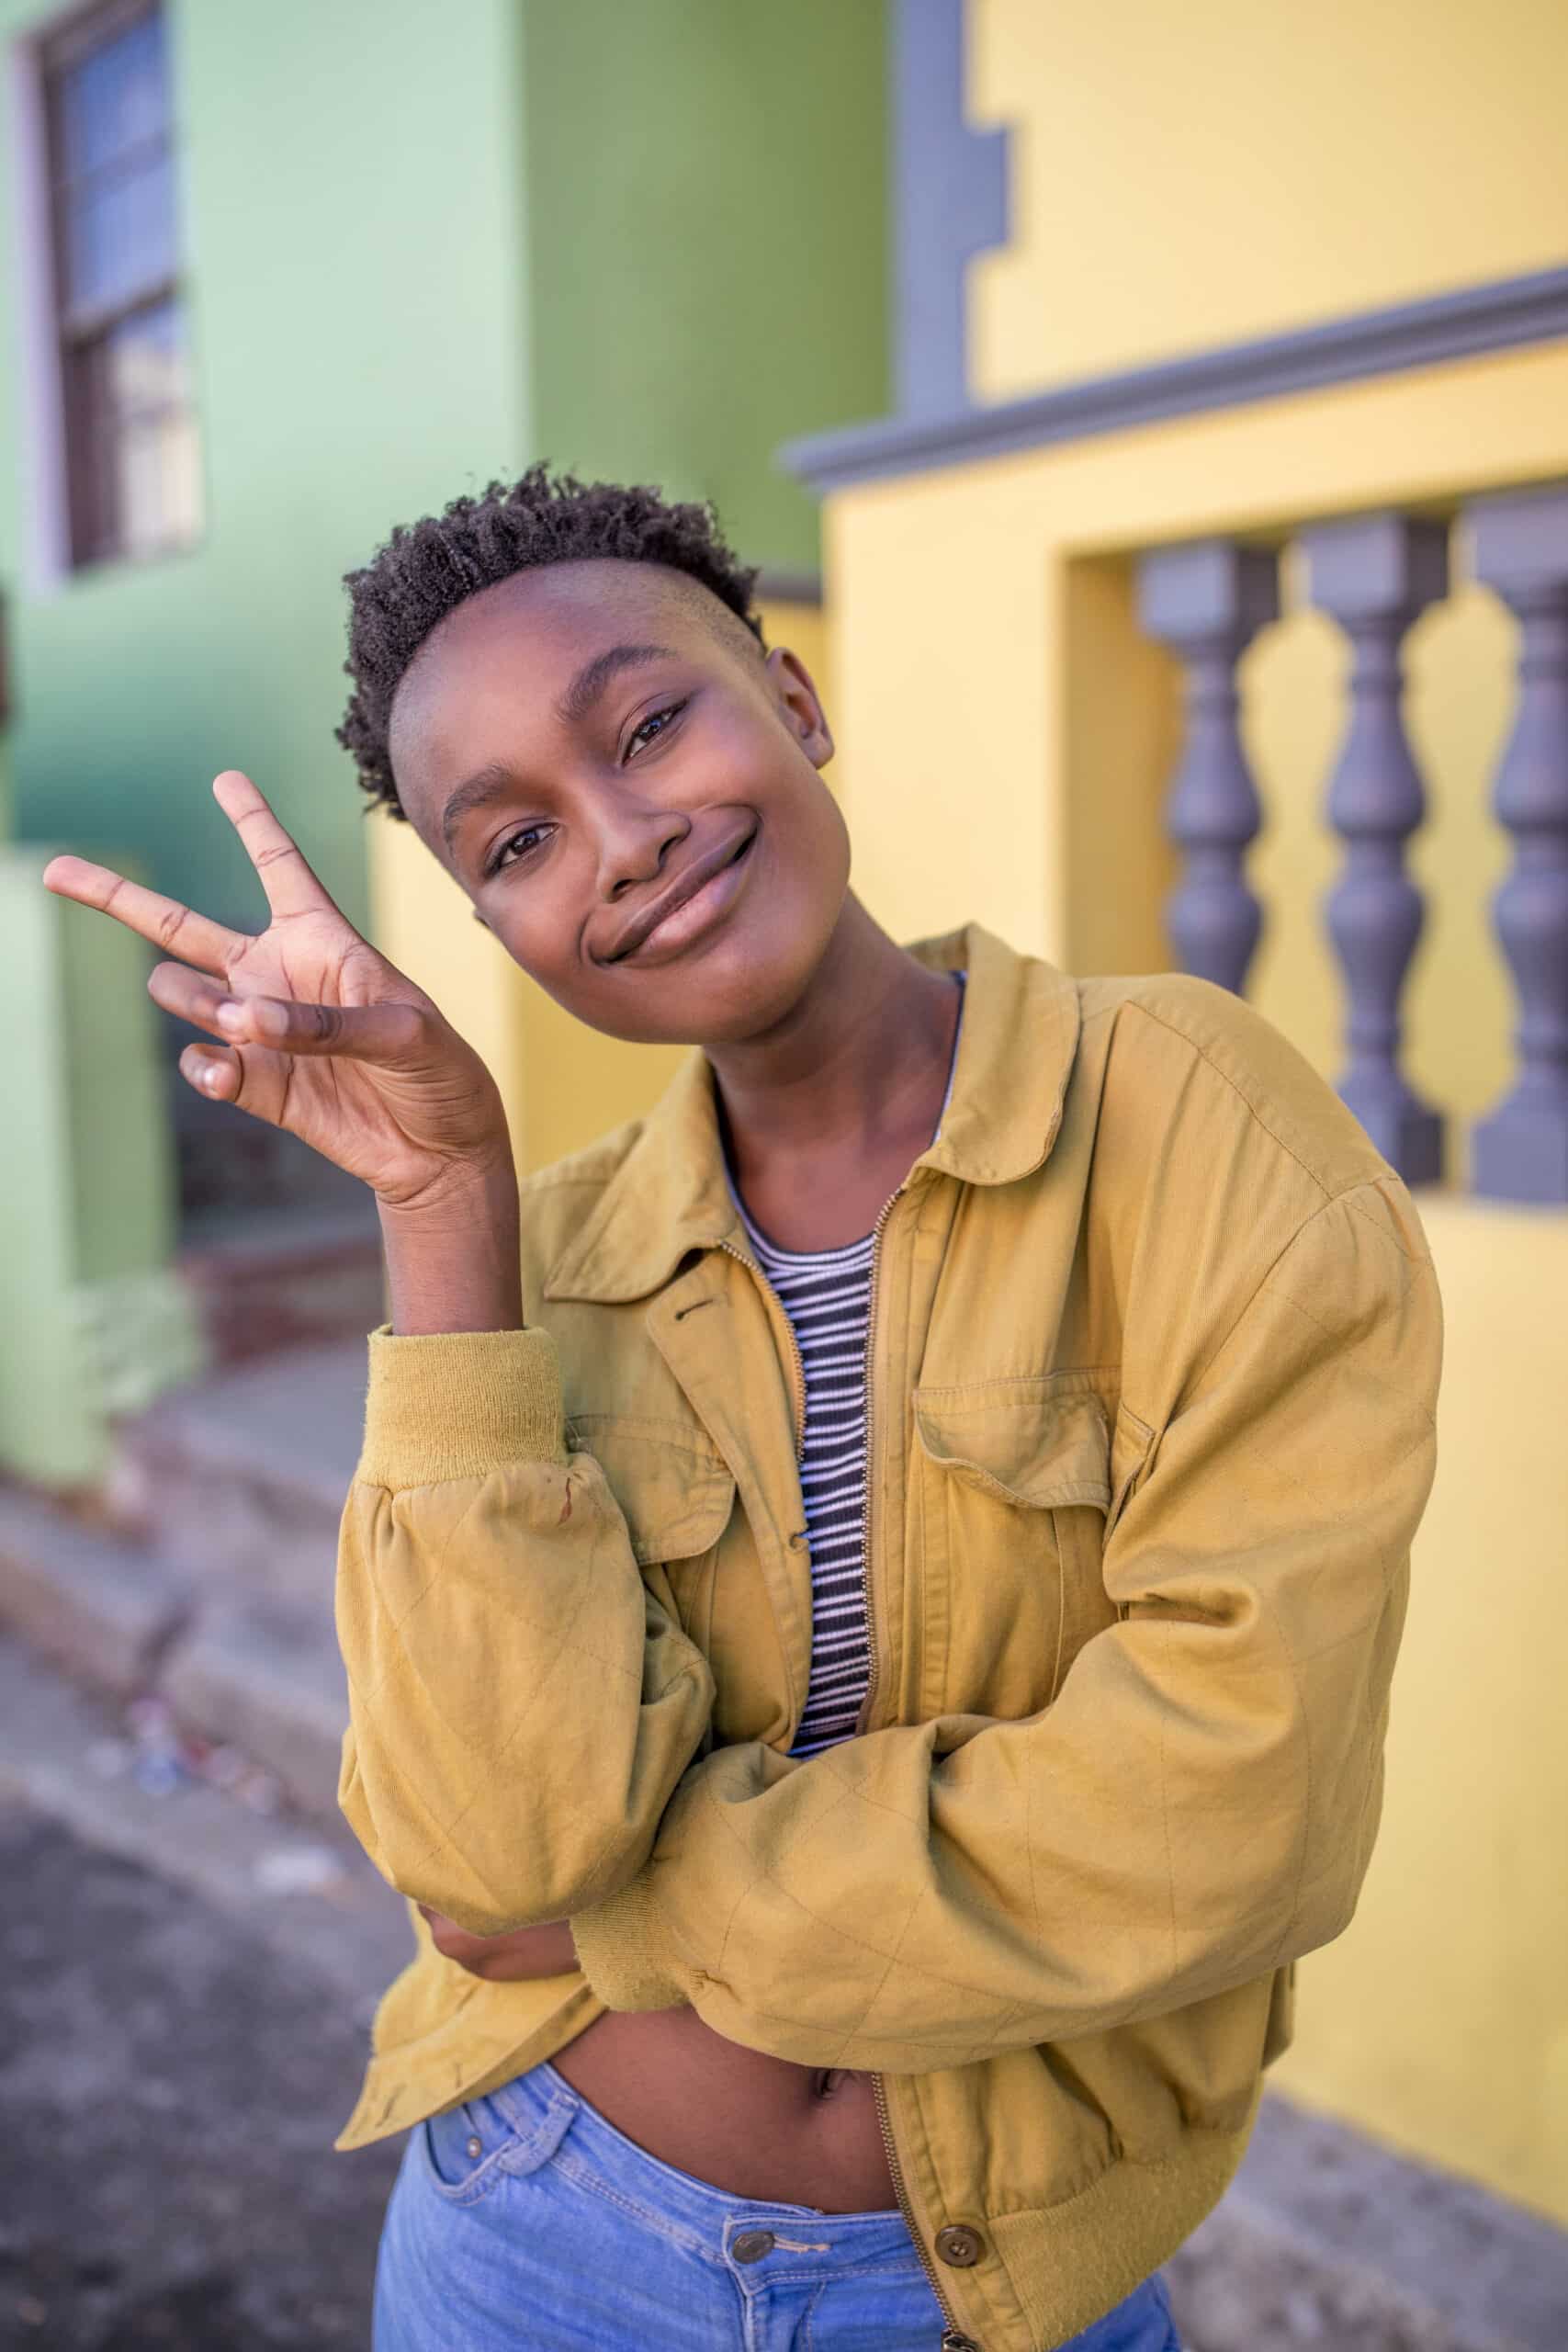 Eine fröhliche junge Frau mit kurzen Haaren lächelt in die Kamera und macht ein Peace-Zeichen, während sie an einer bunten Wand lehnt. Sie trägt eine gelbe Jacke über einem gestreiften Oberteil und blaue Jeans. © Fotografie Tomas Rodriguez